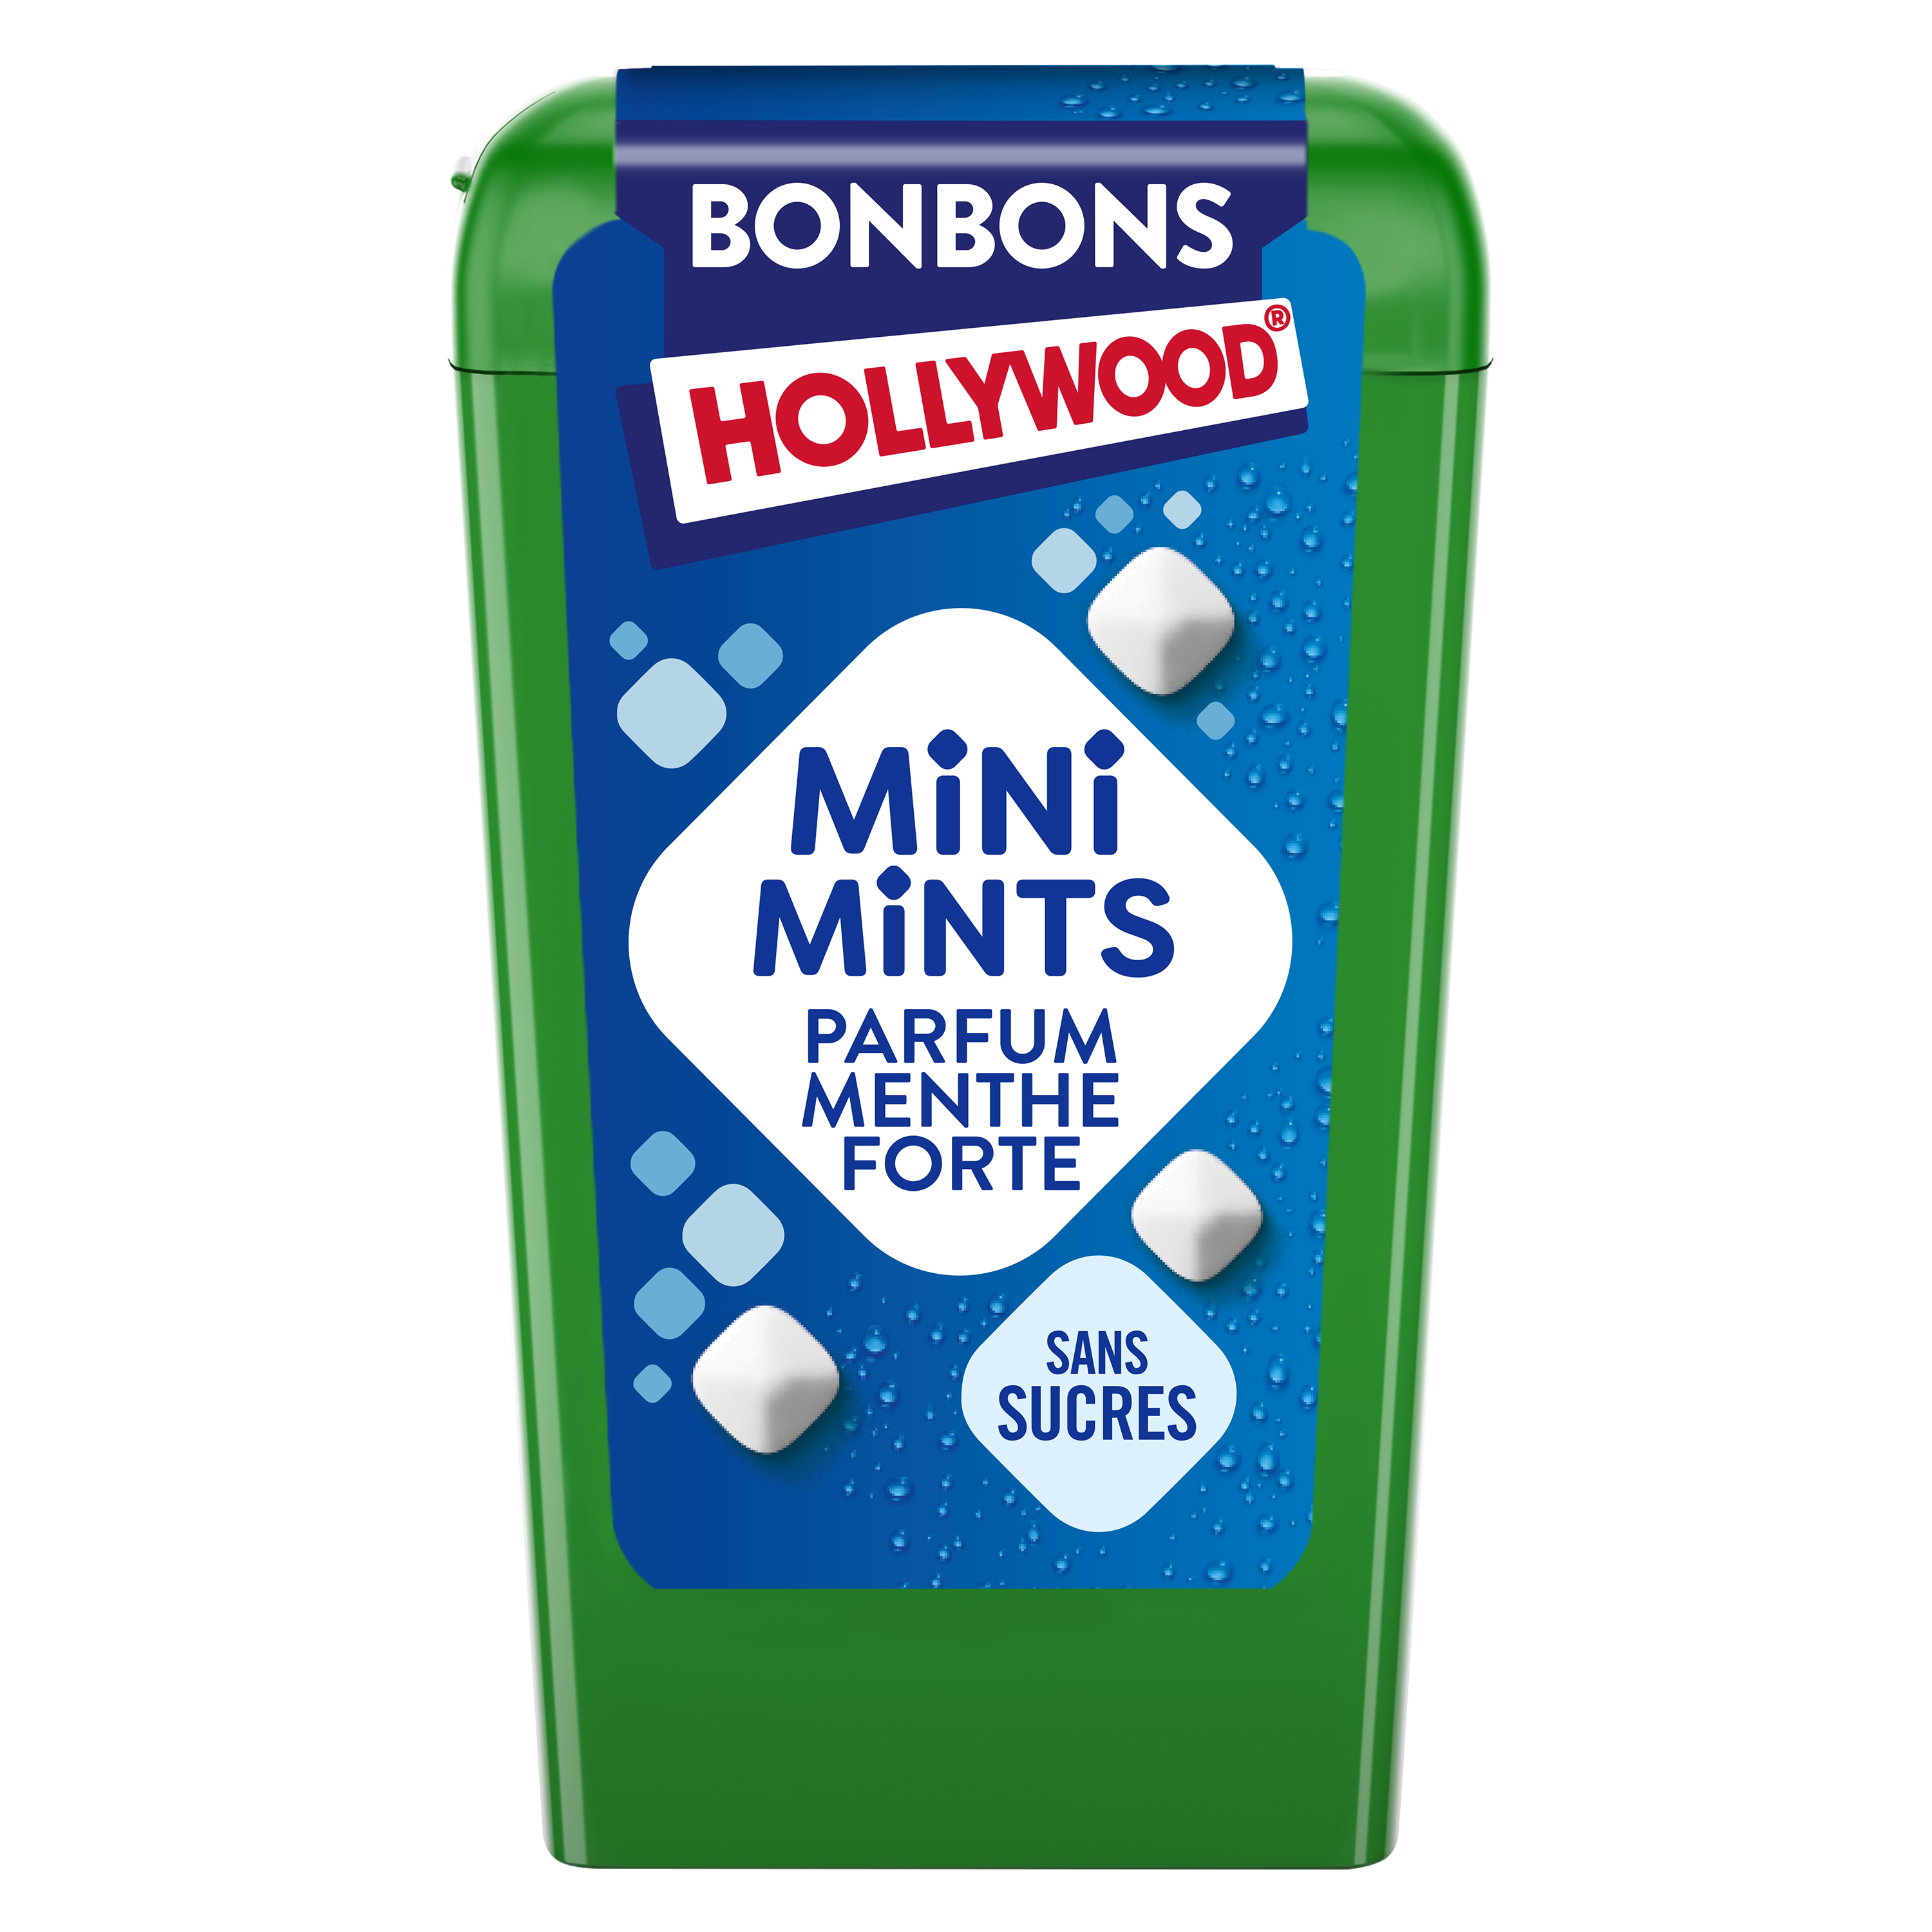 Mini Mints parfum Menthe Forte